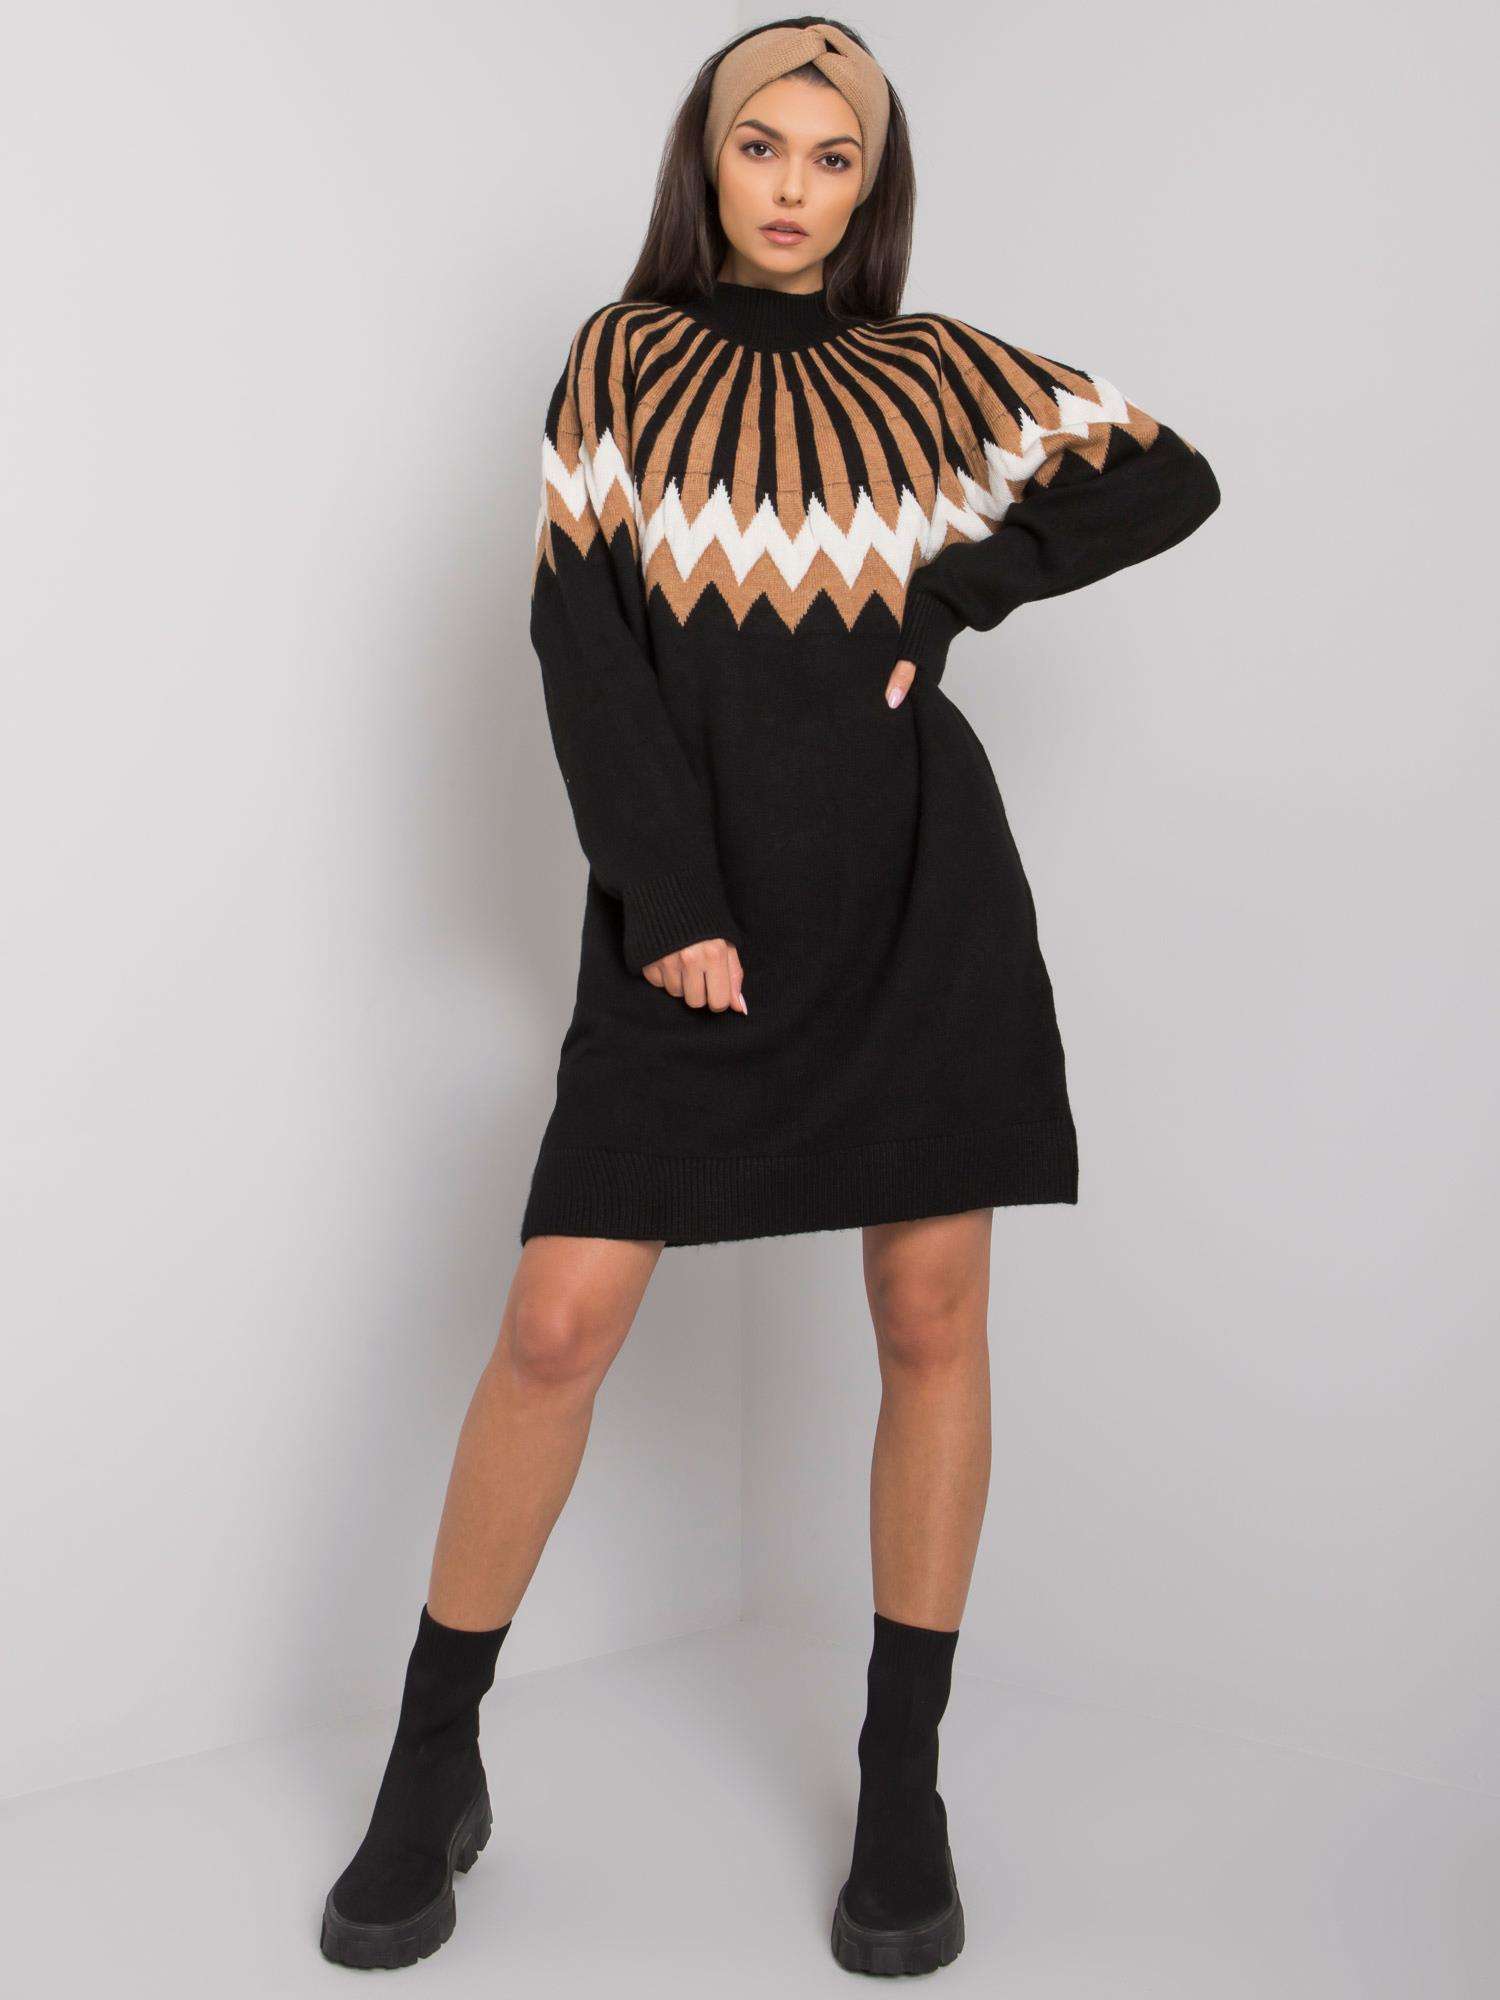 Black Turtleneck Knitted Dress